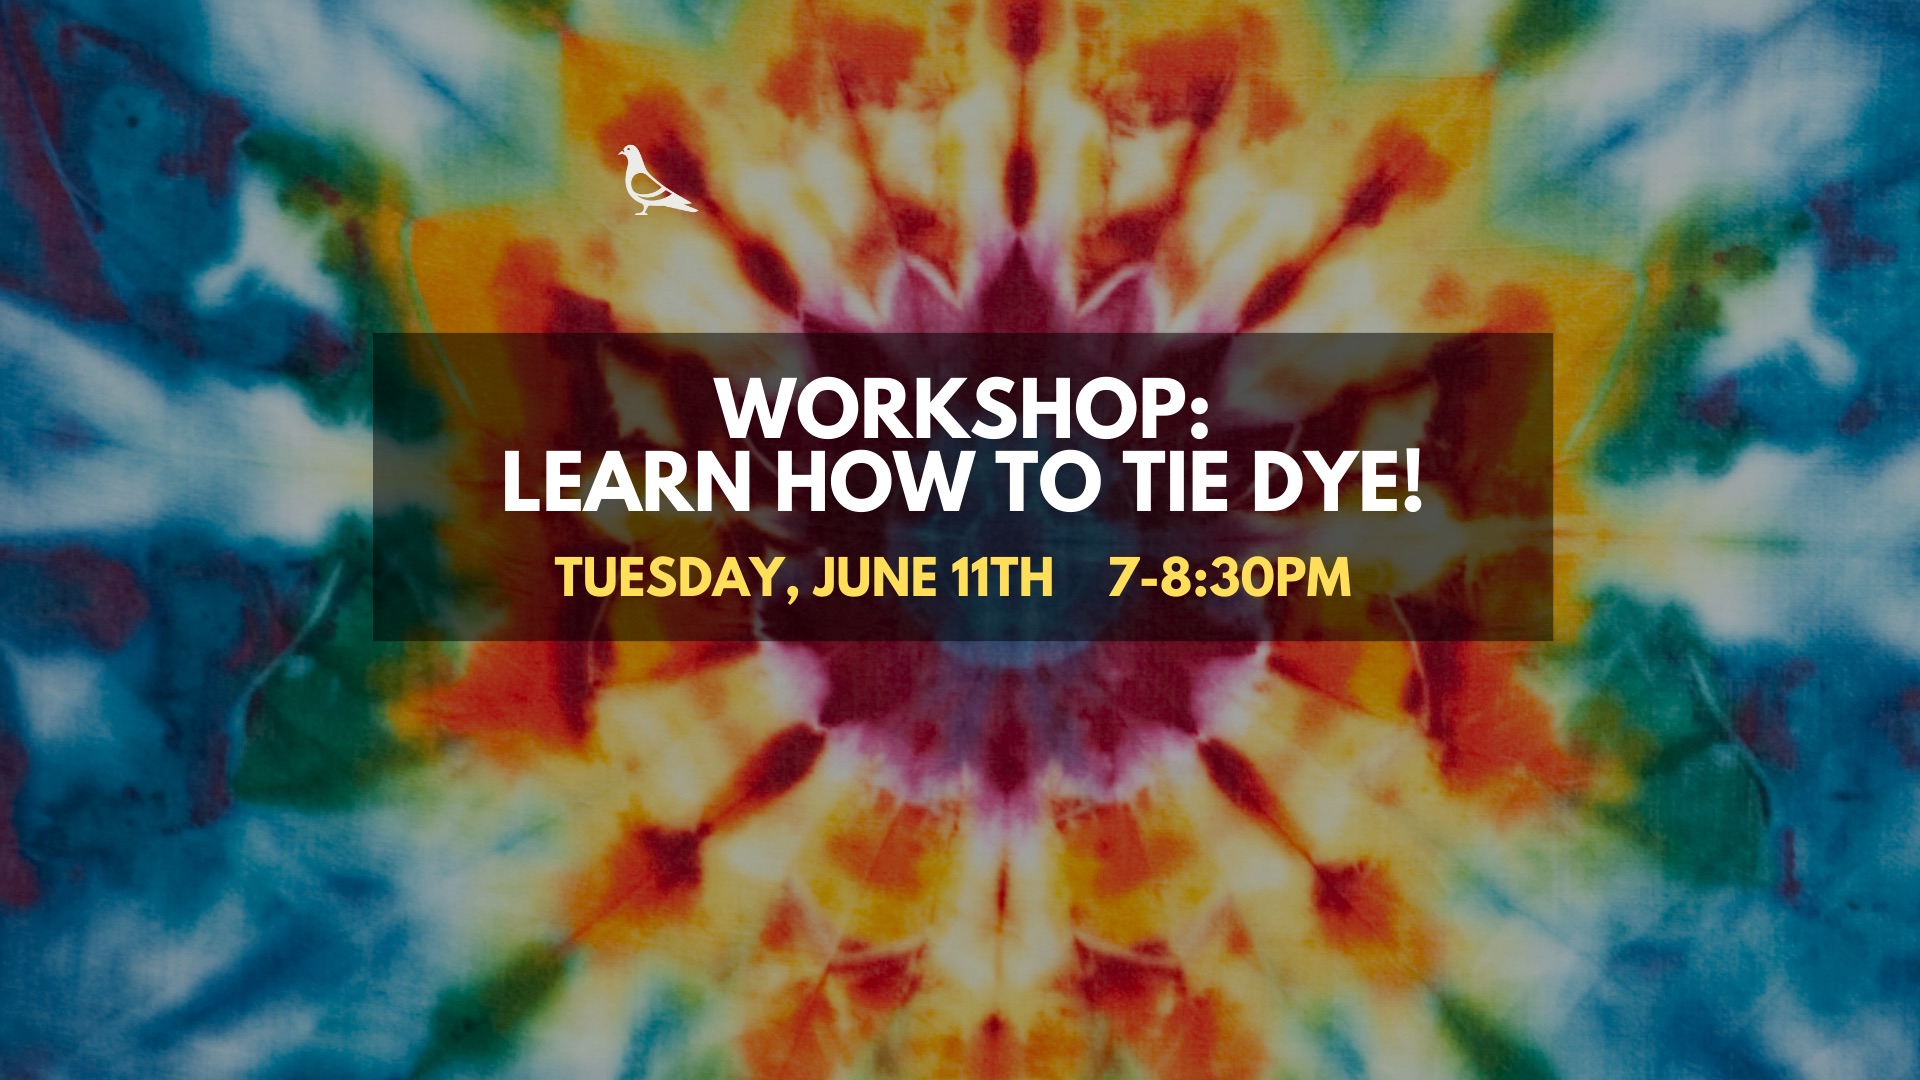 Tie-Dye Workshop